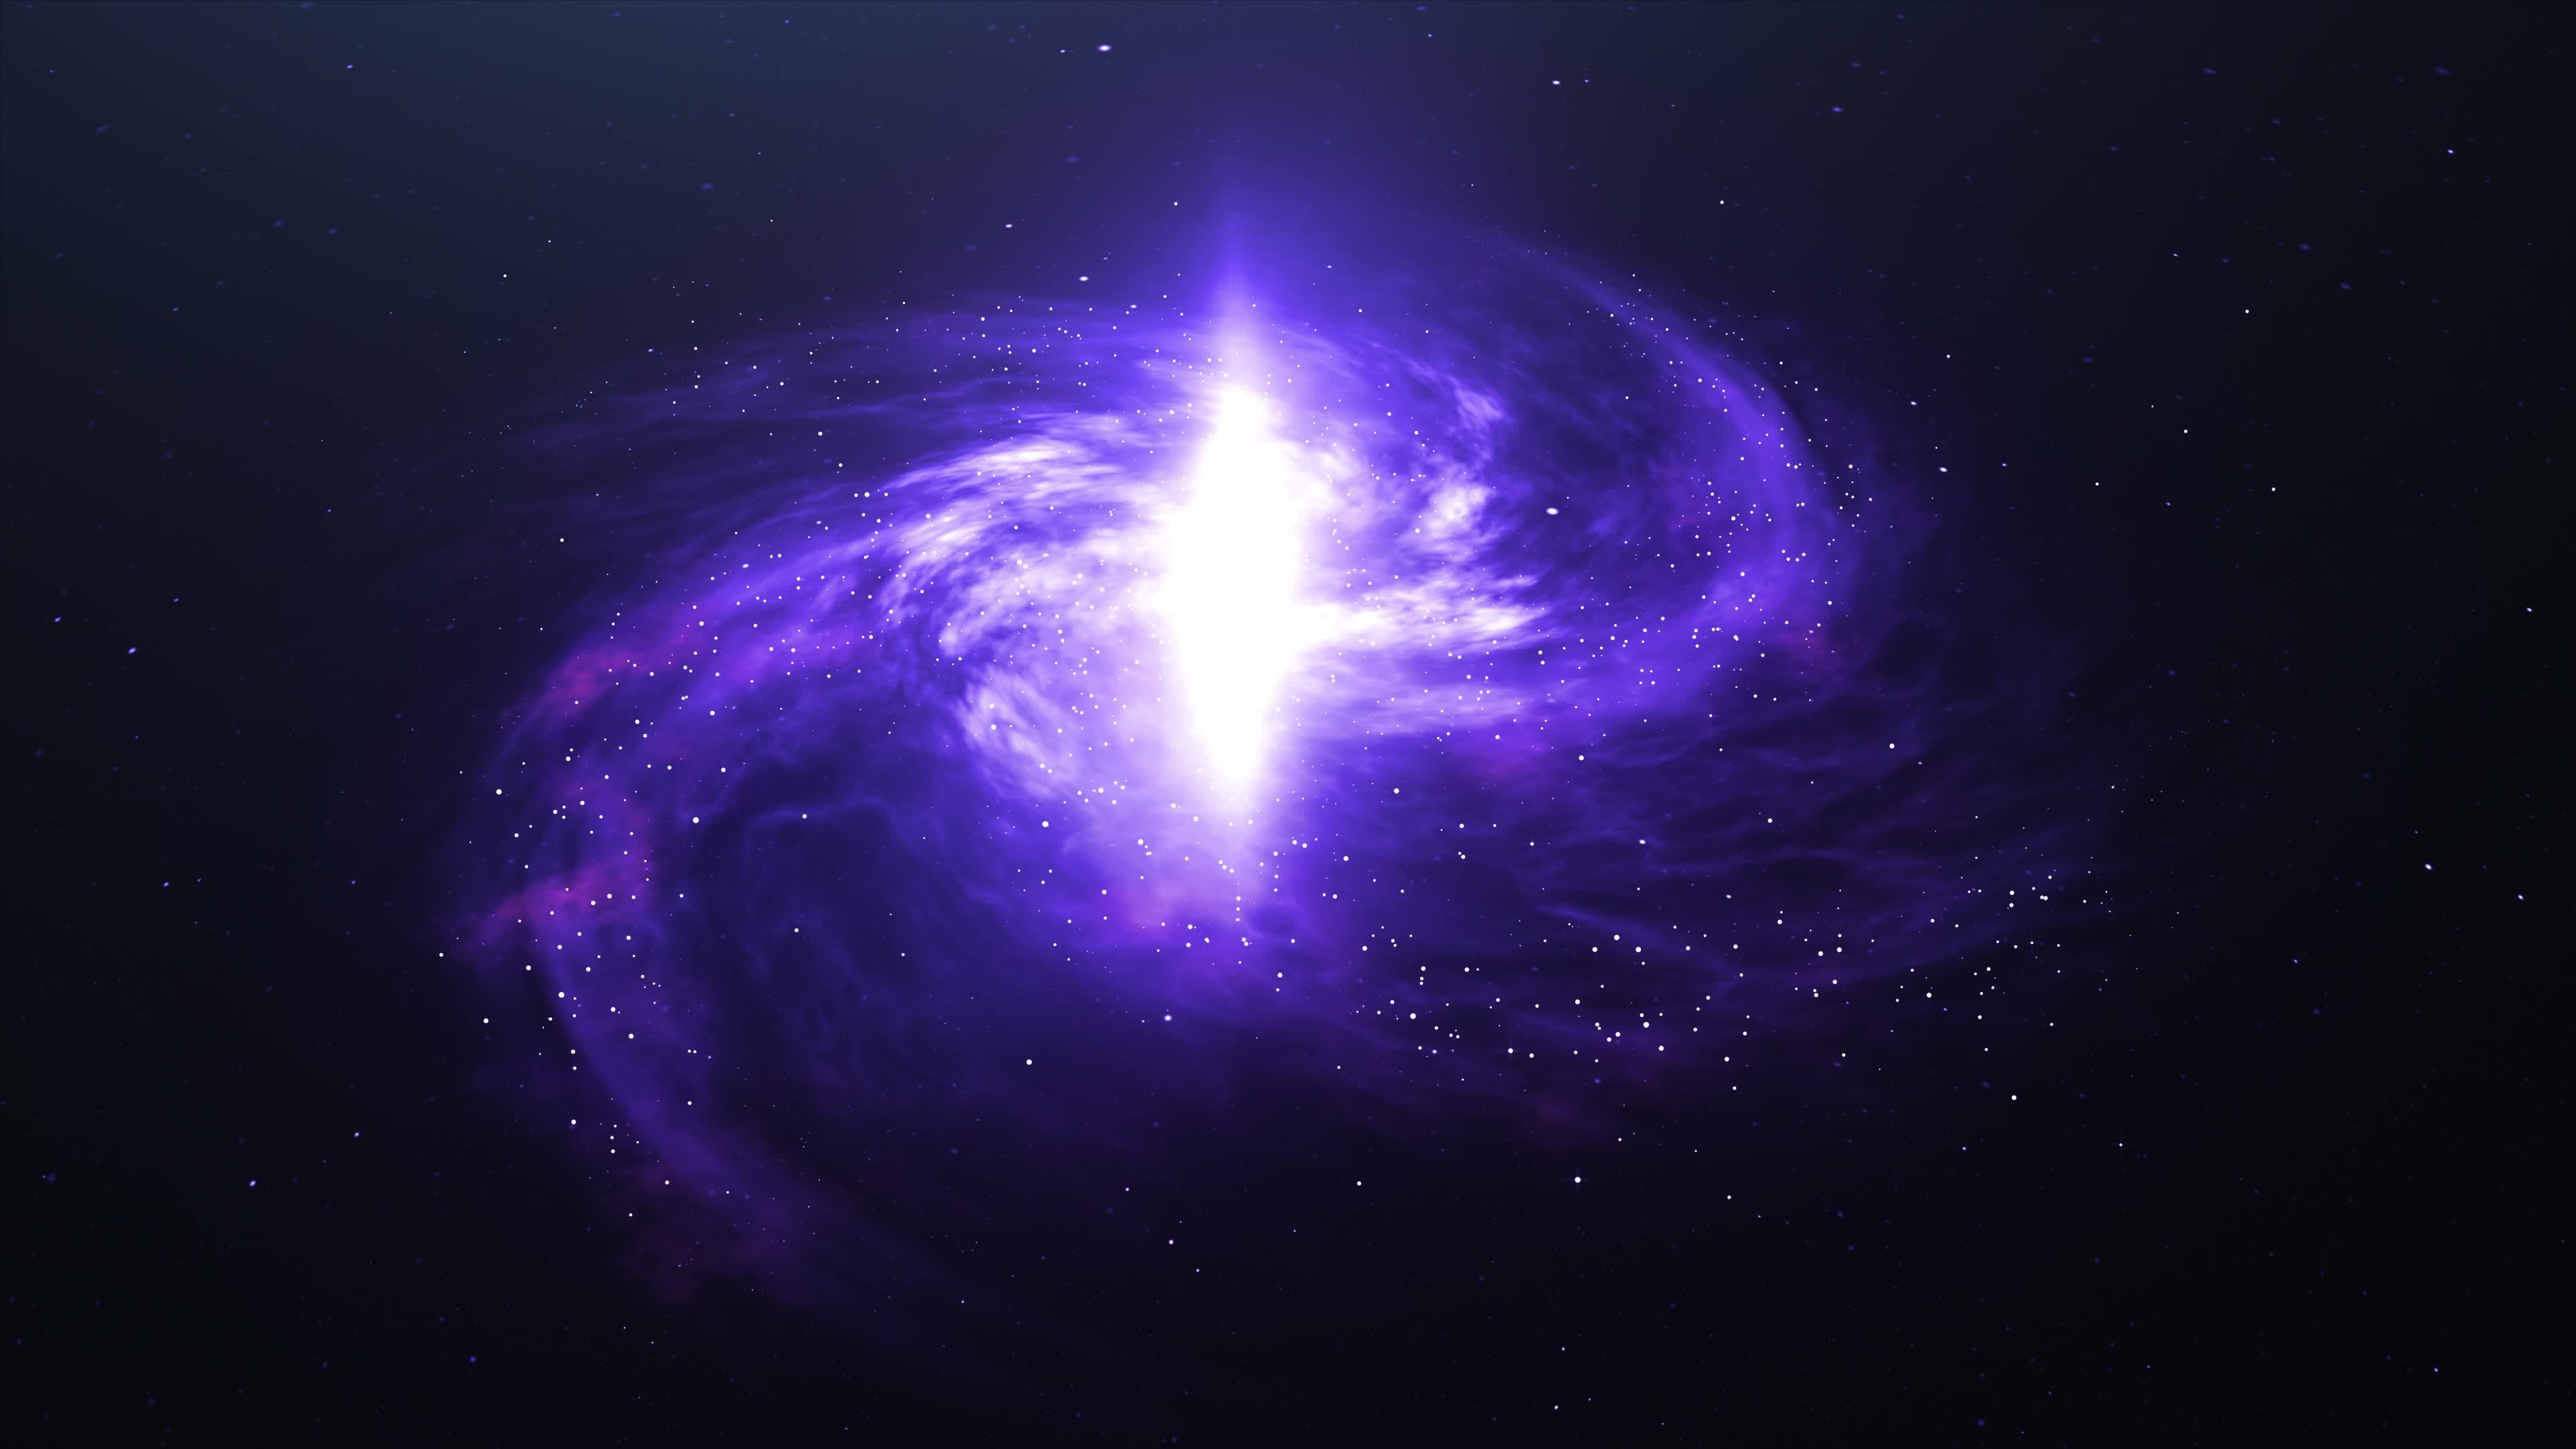 Thiên hà xoắn ốc là một điều kỳ diệu của vũ trụ. Các bức ảnh về thiên hà xoắn ốc sẽ khiến bạn ngỡ ngàng với sự đa dạng và sự phong phú của vũ trụ. Hãy xem hình ảnh để có được trải nghiệm này.